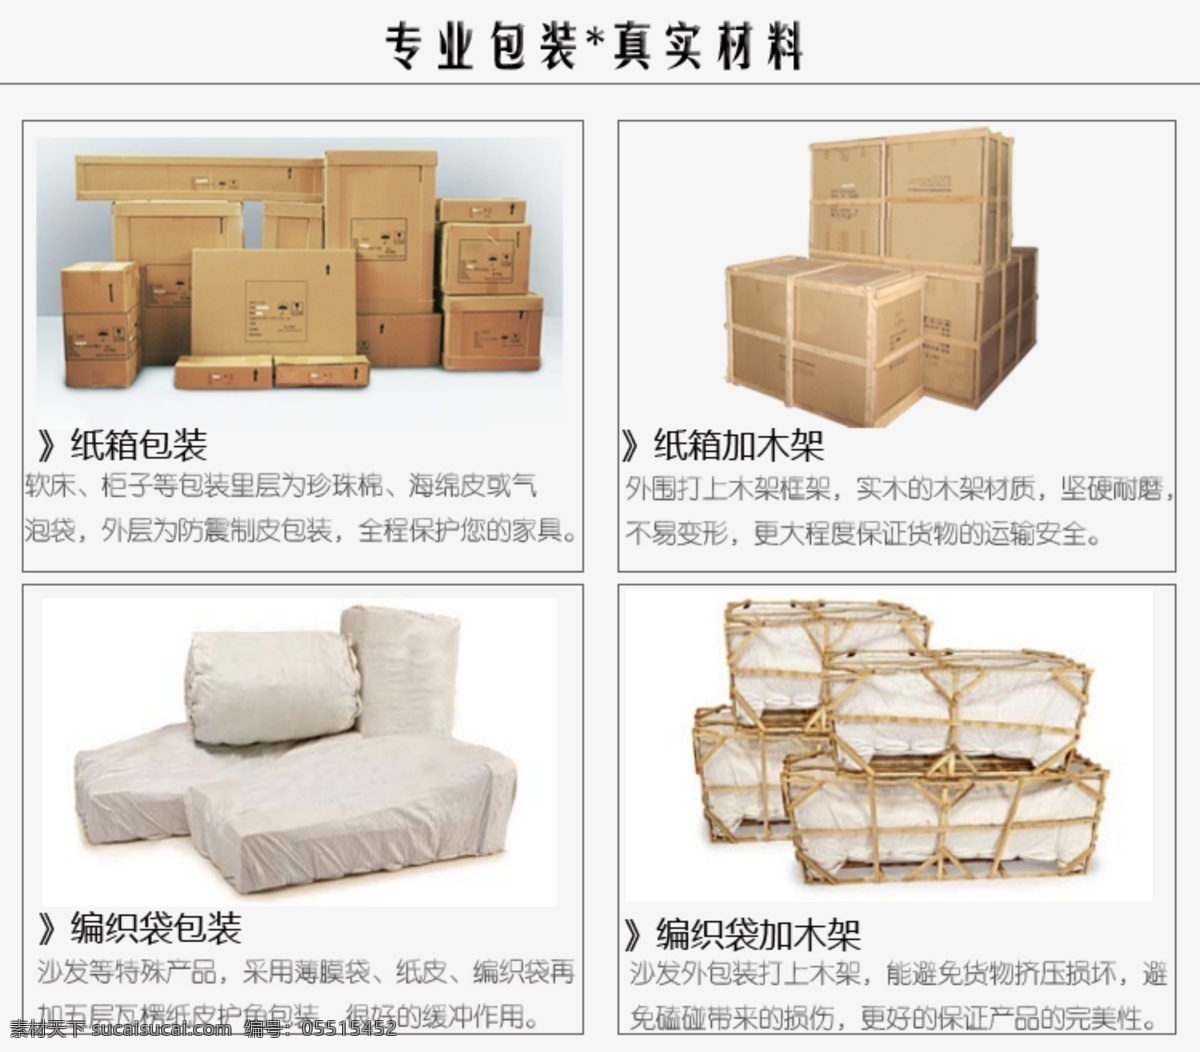 家具行业 包装 说明 模版下载 家具 木架包装 编织袋包装 纸箱包装 包装设计